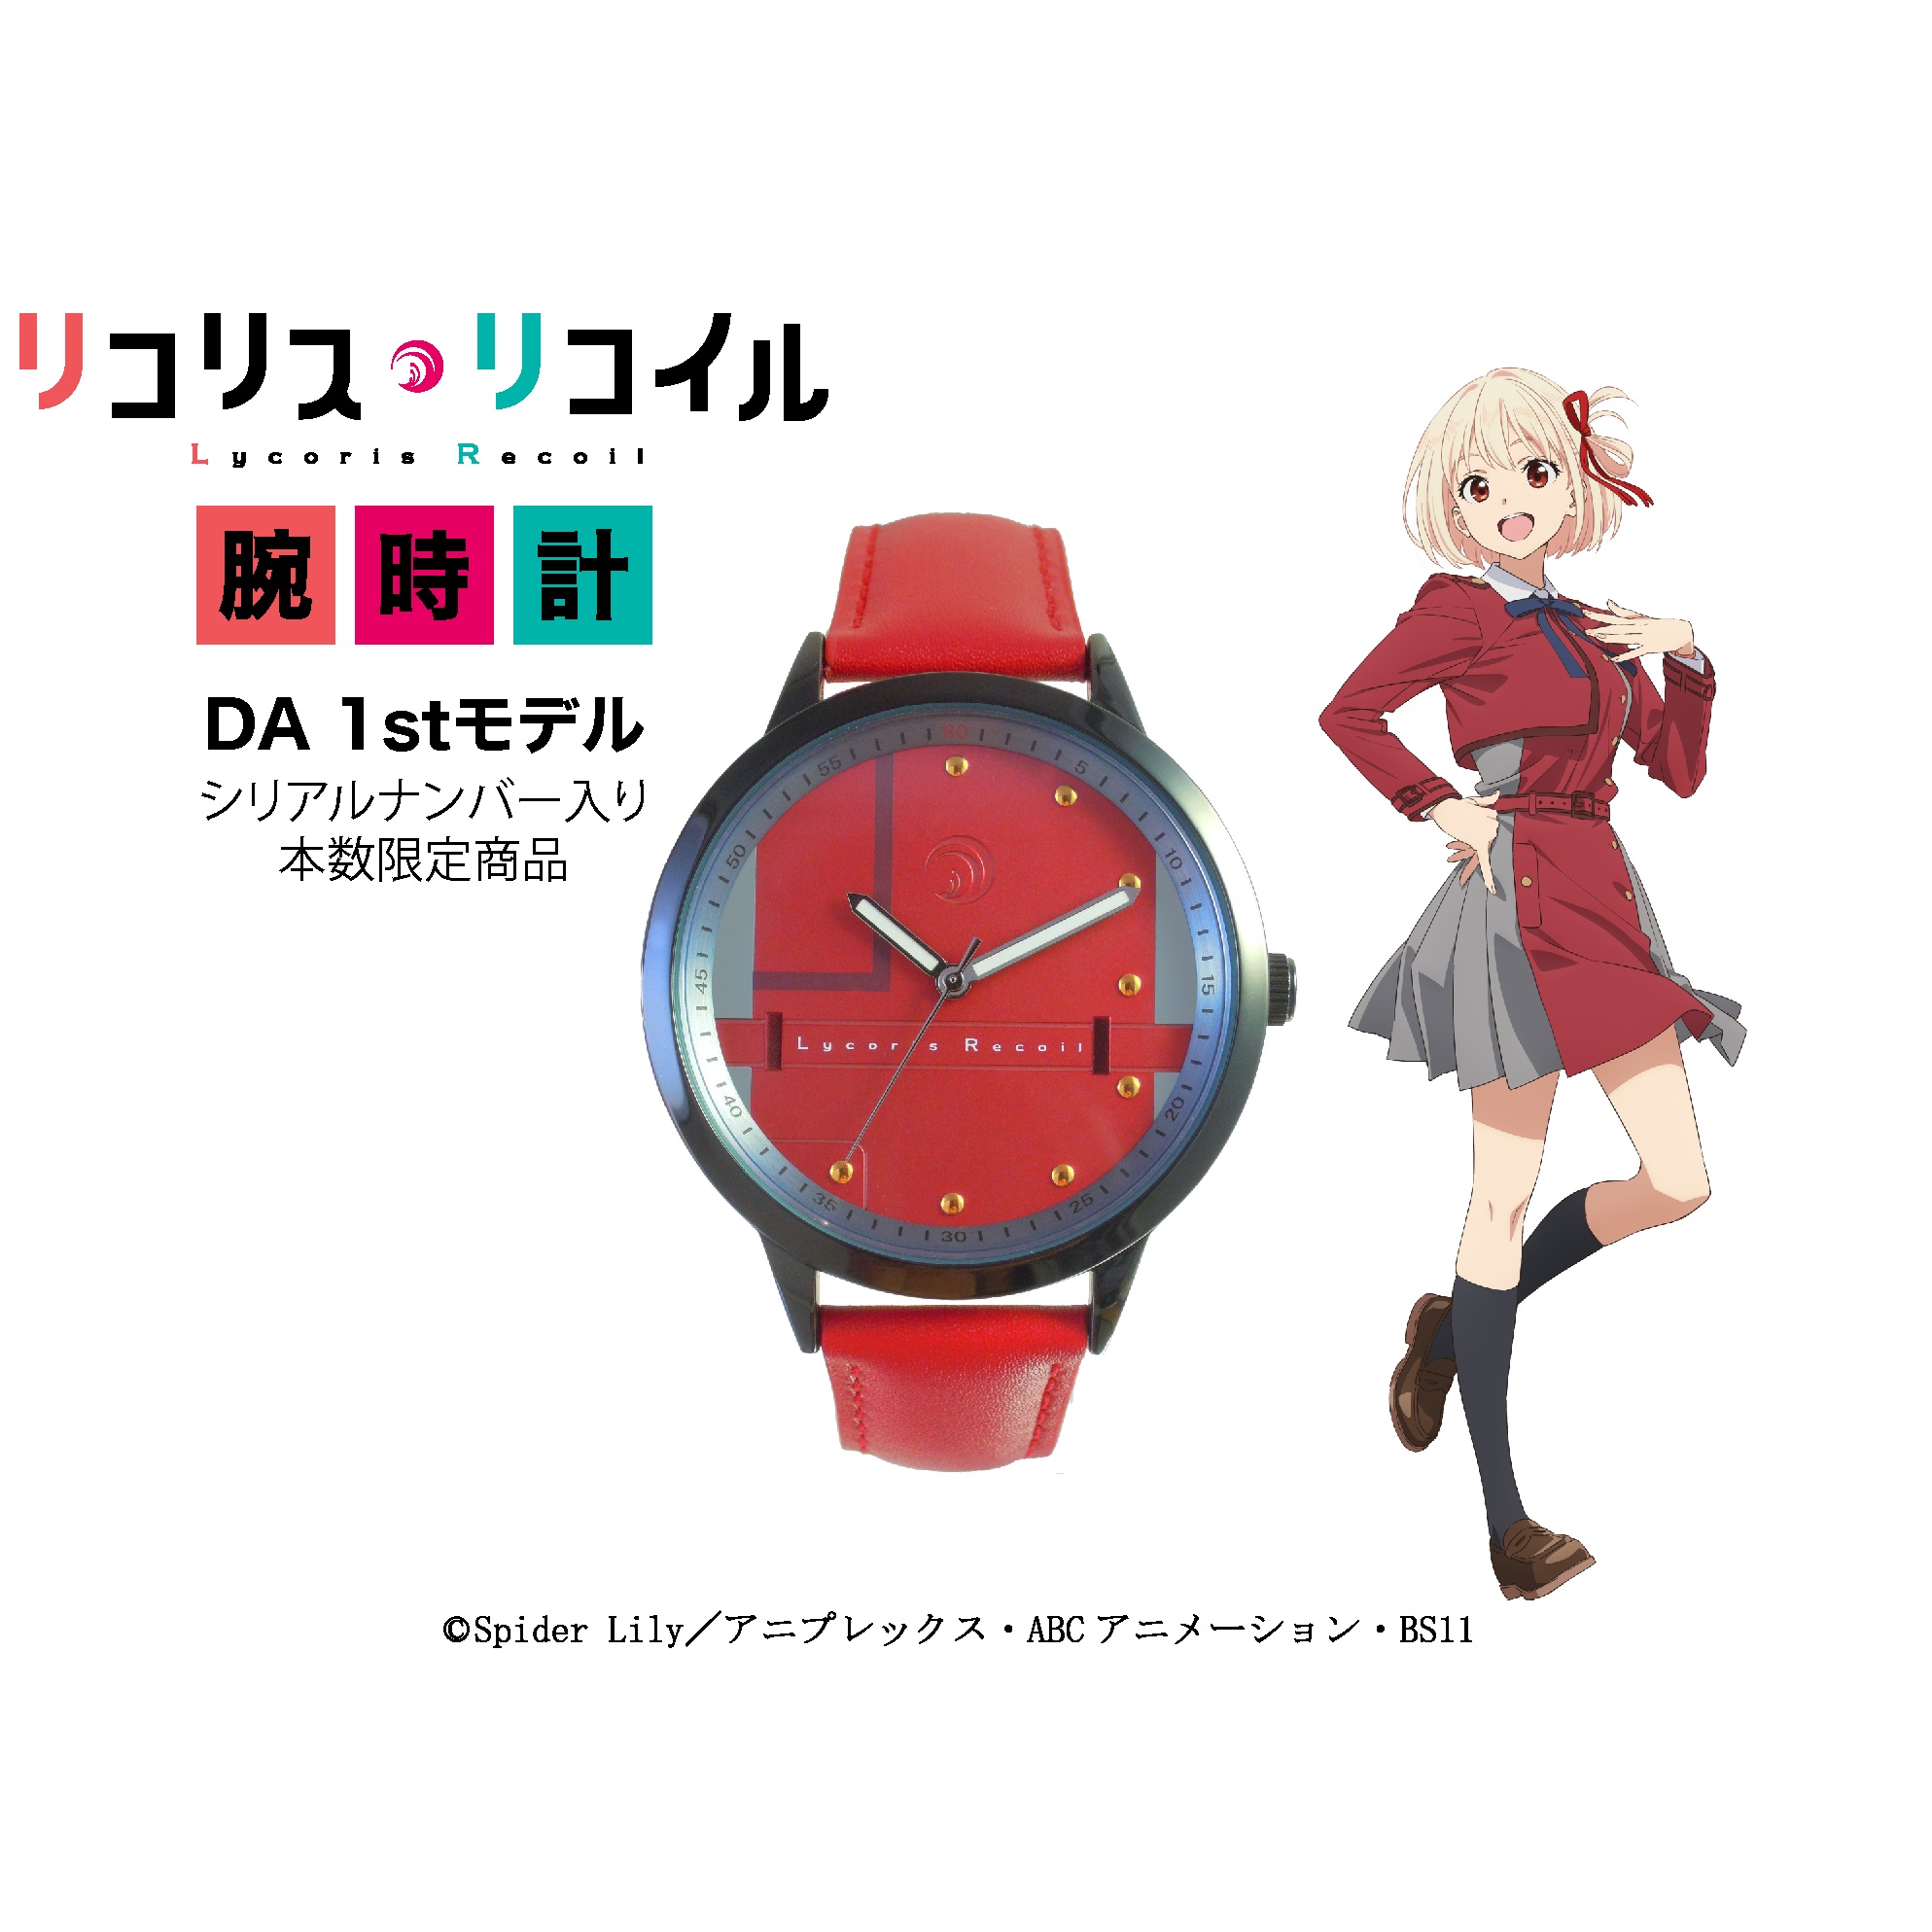 リコリス・リコイル 錦木千束(DA 1st)モデル腕時計